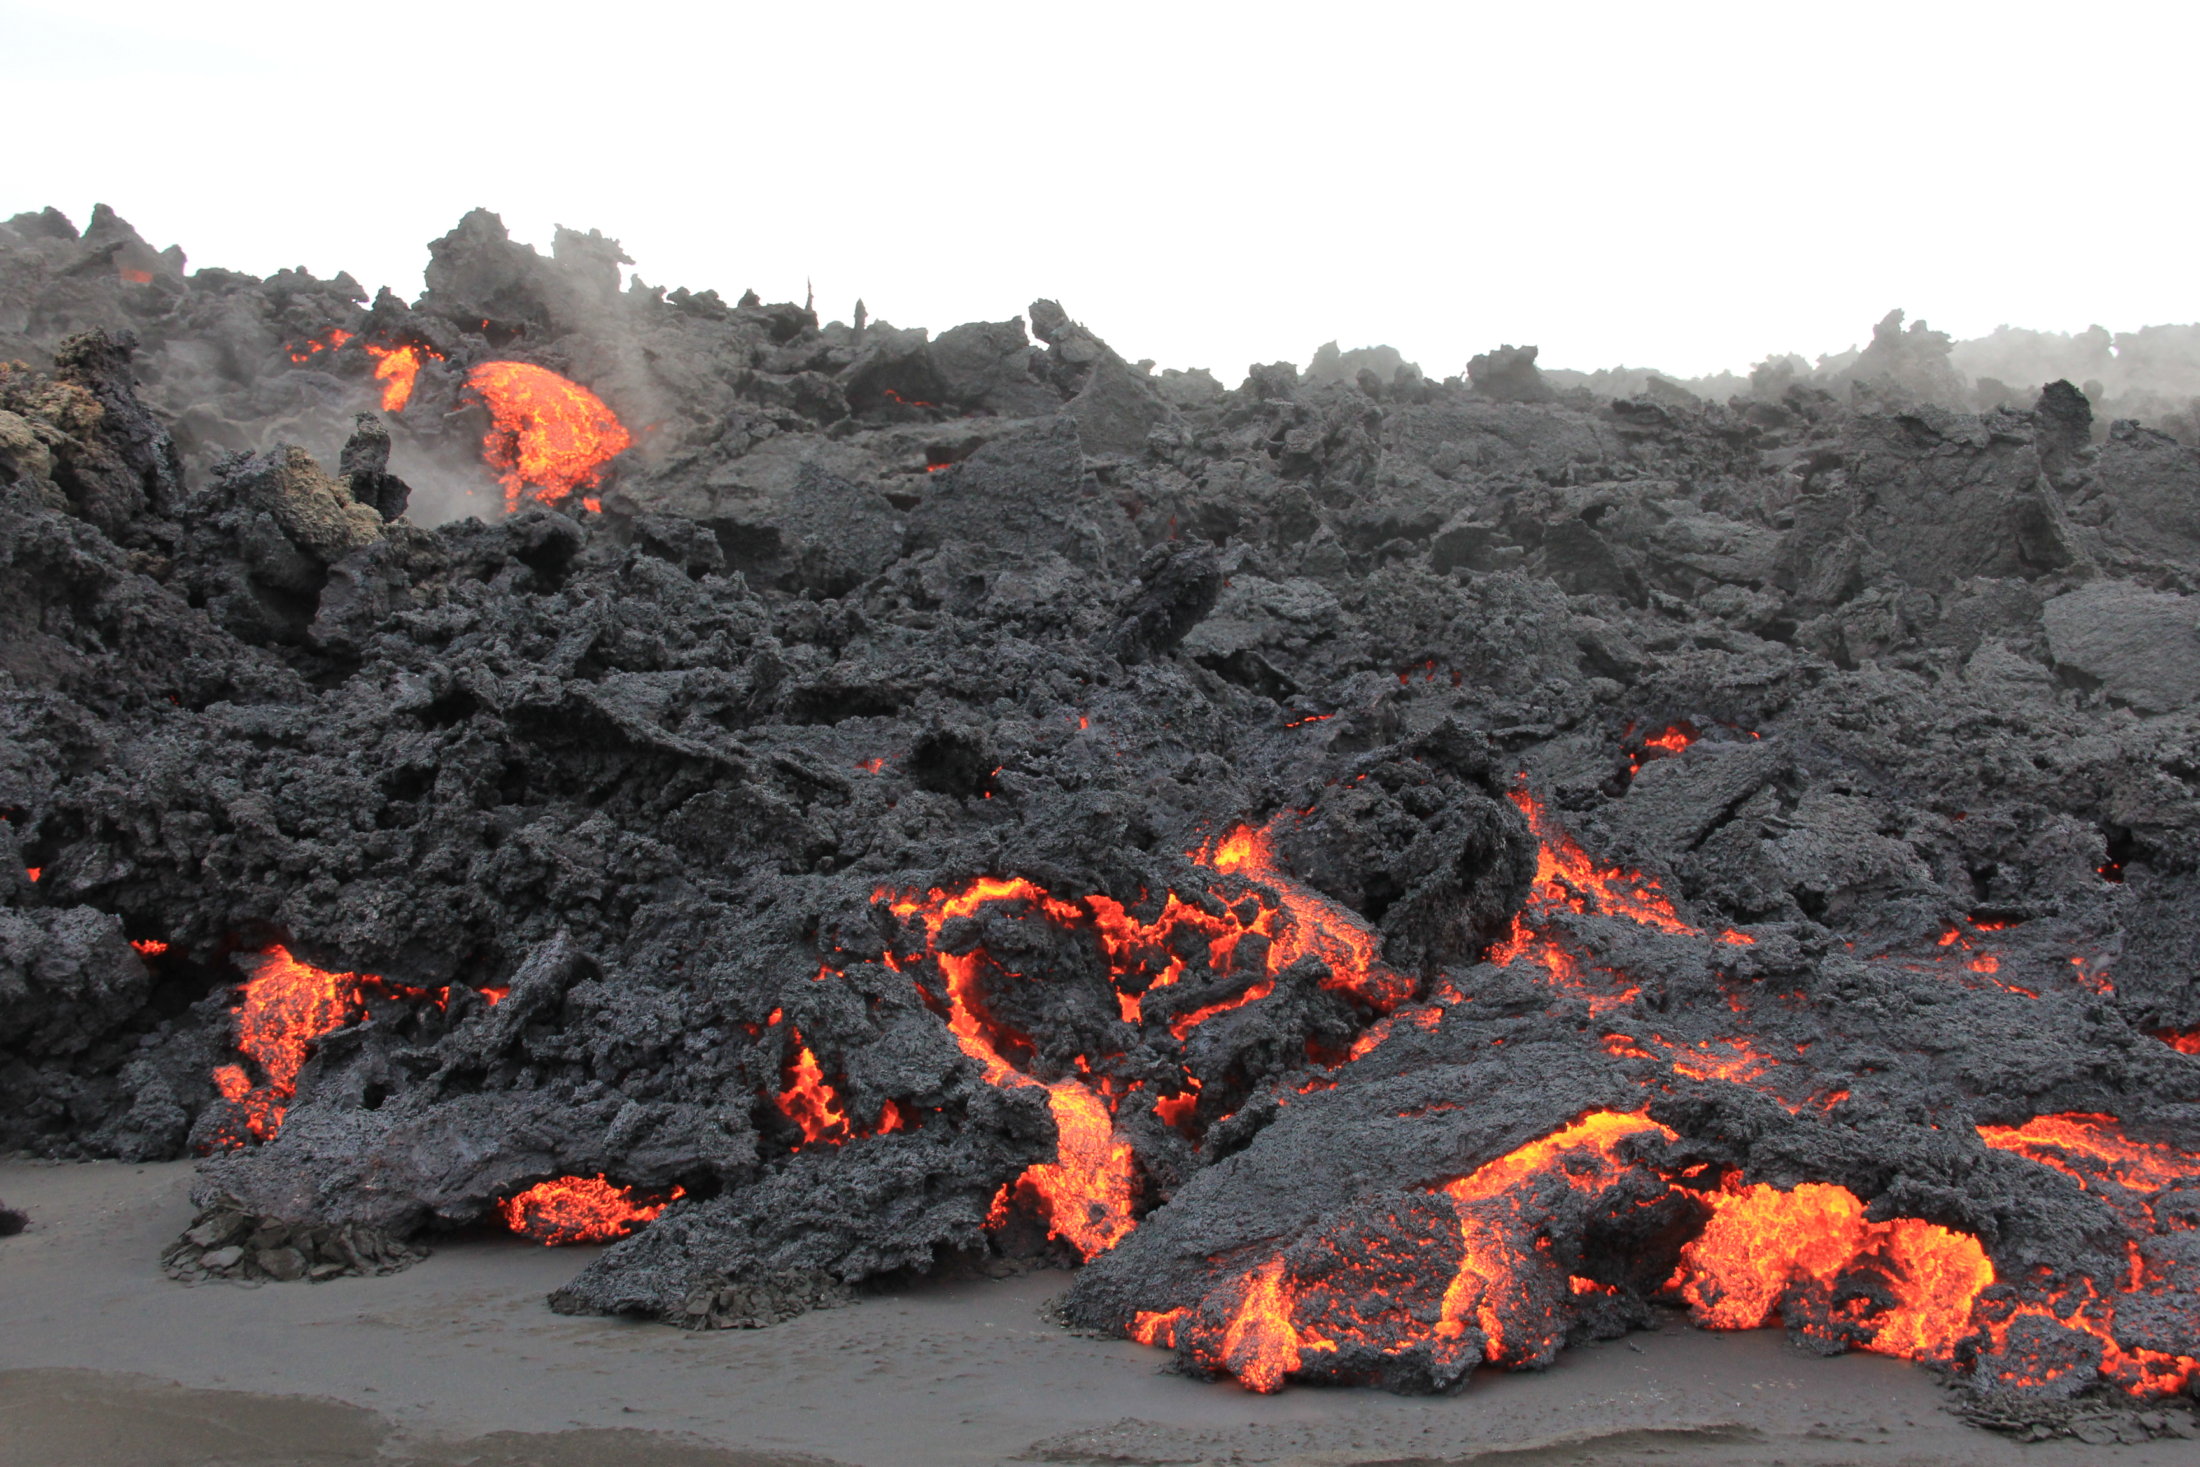 Holuhraun eruption 2014